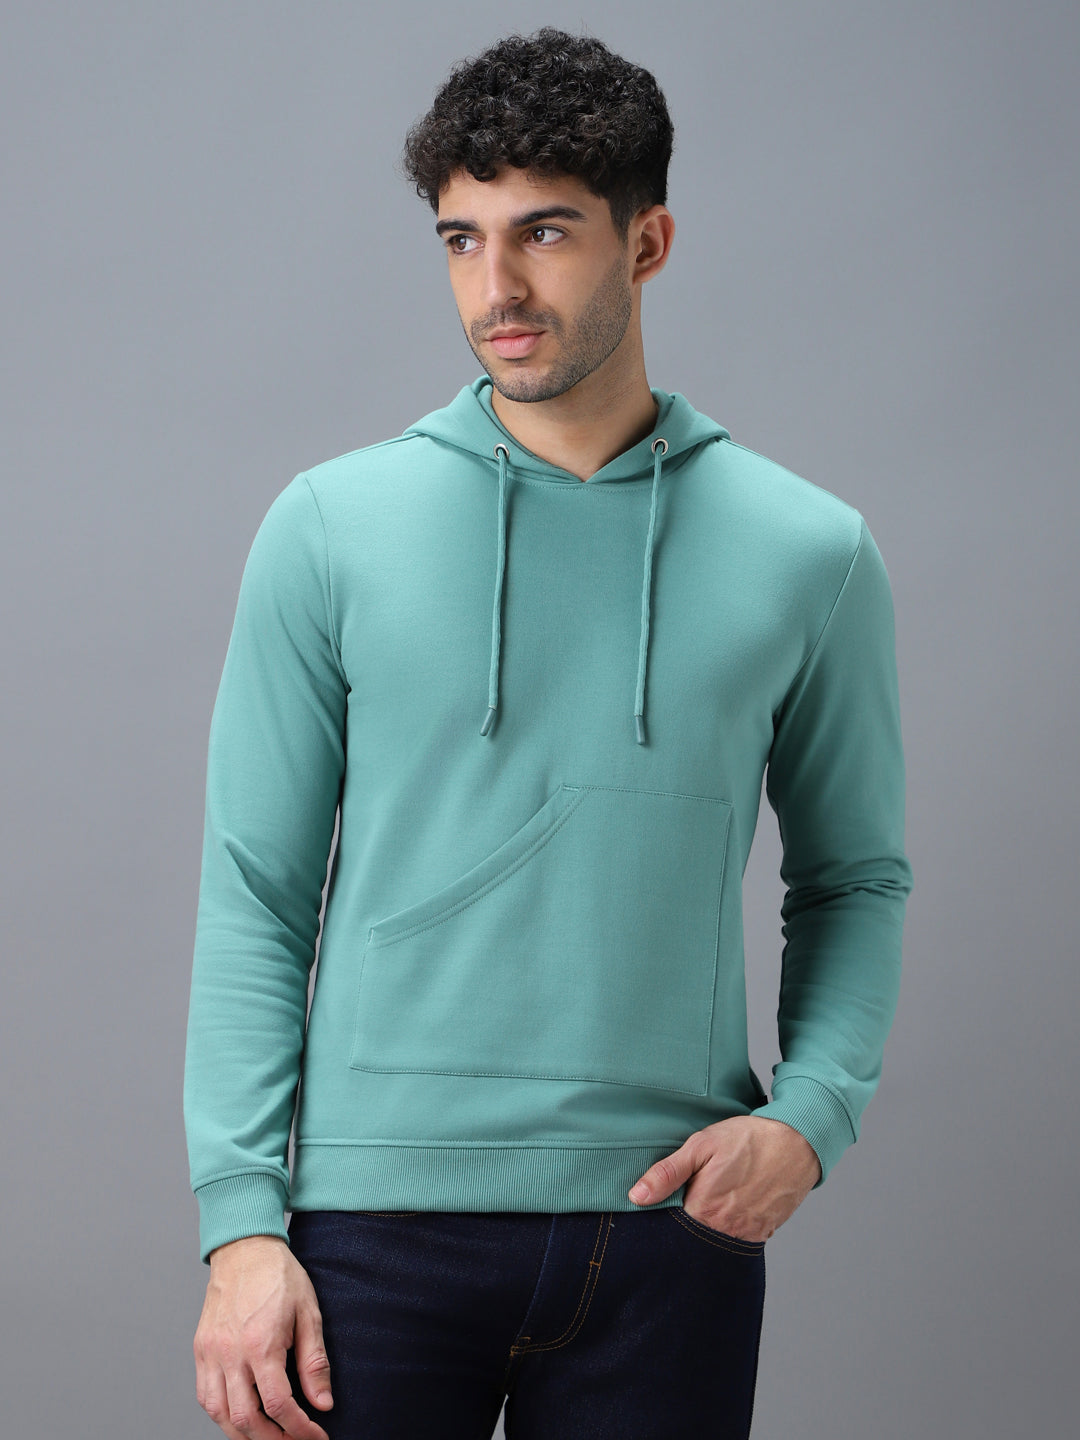 Men's Green Cotton Solid Hooded Neck Sweatshirt